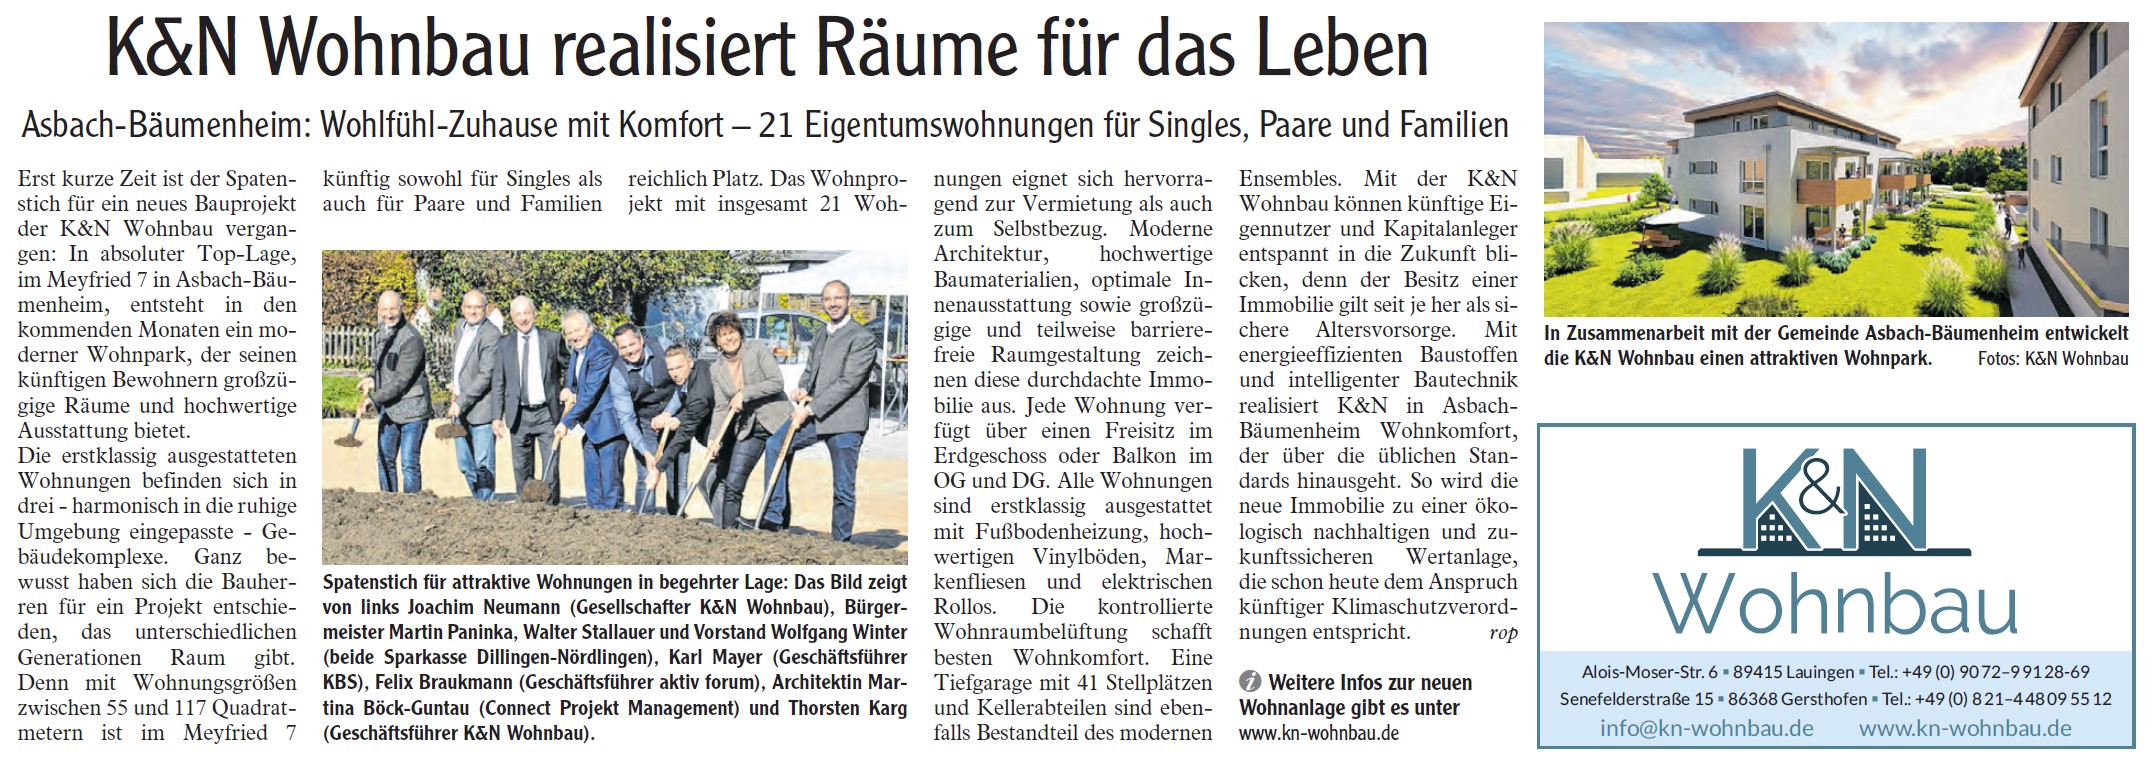 Zeitungsbericht Günzburger Zeitung